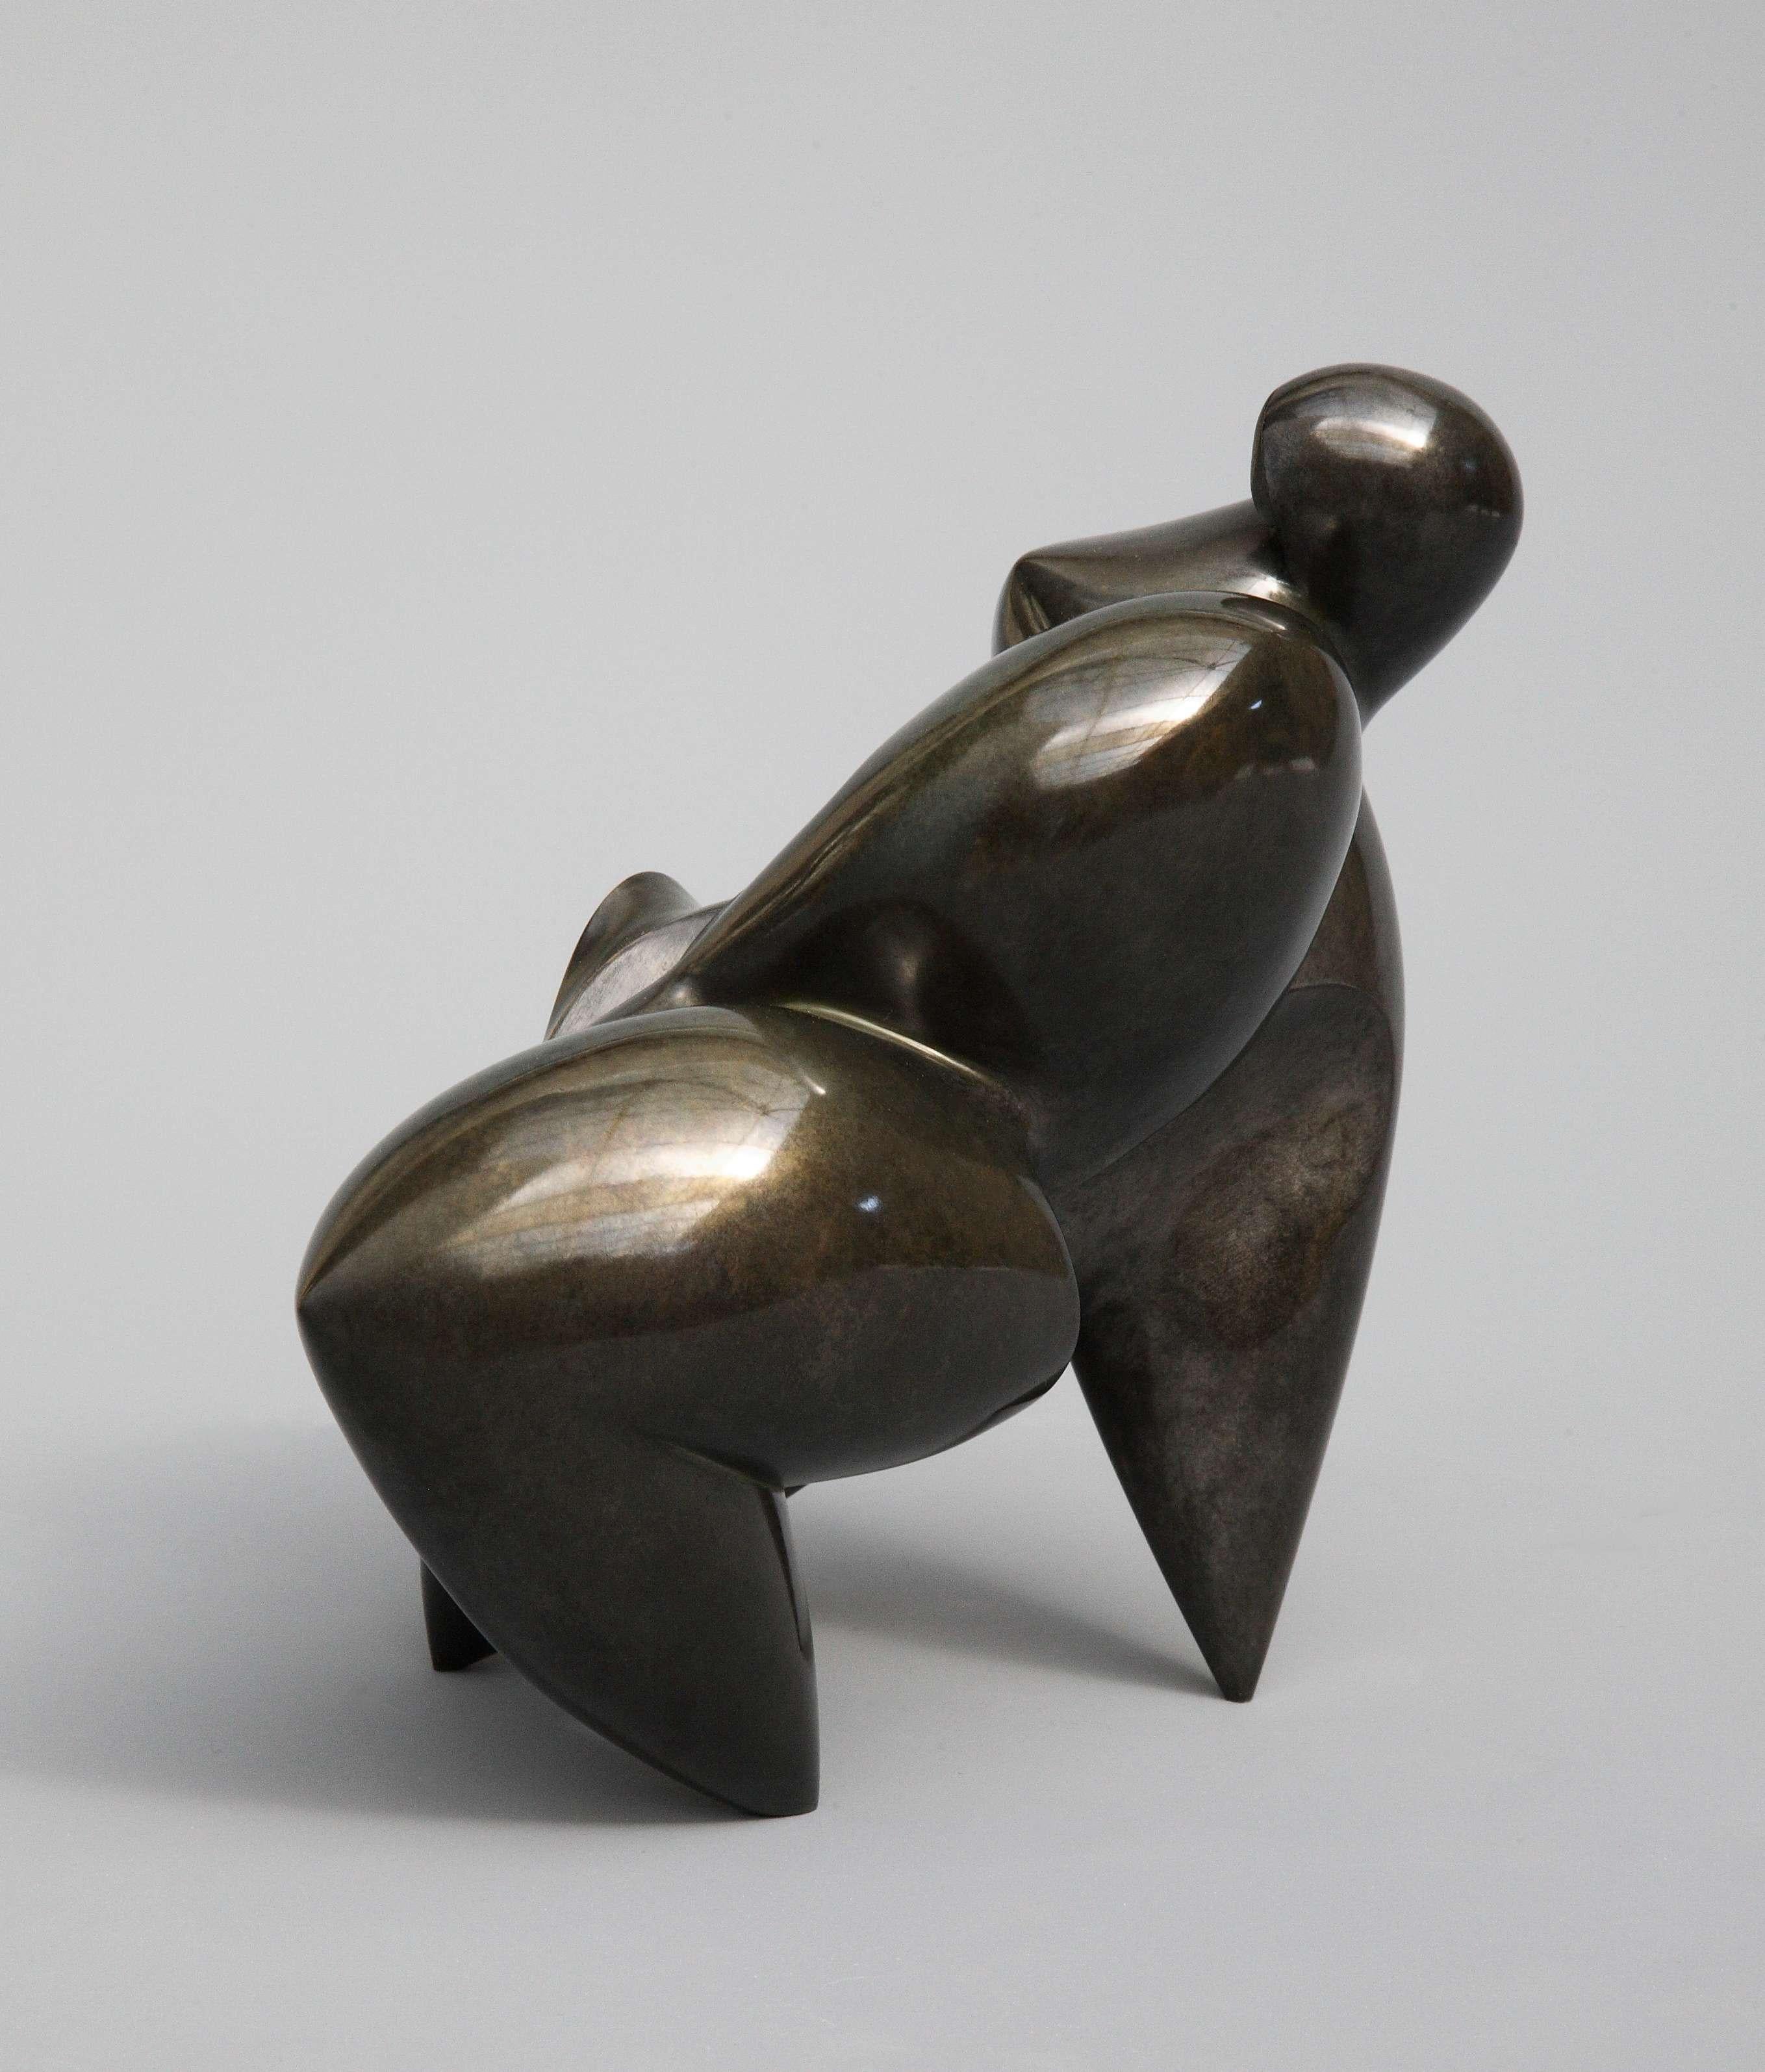 Polls – Bronzeskulptur – Athanor – Sculpture von Dominique Polles 